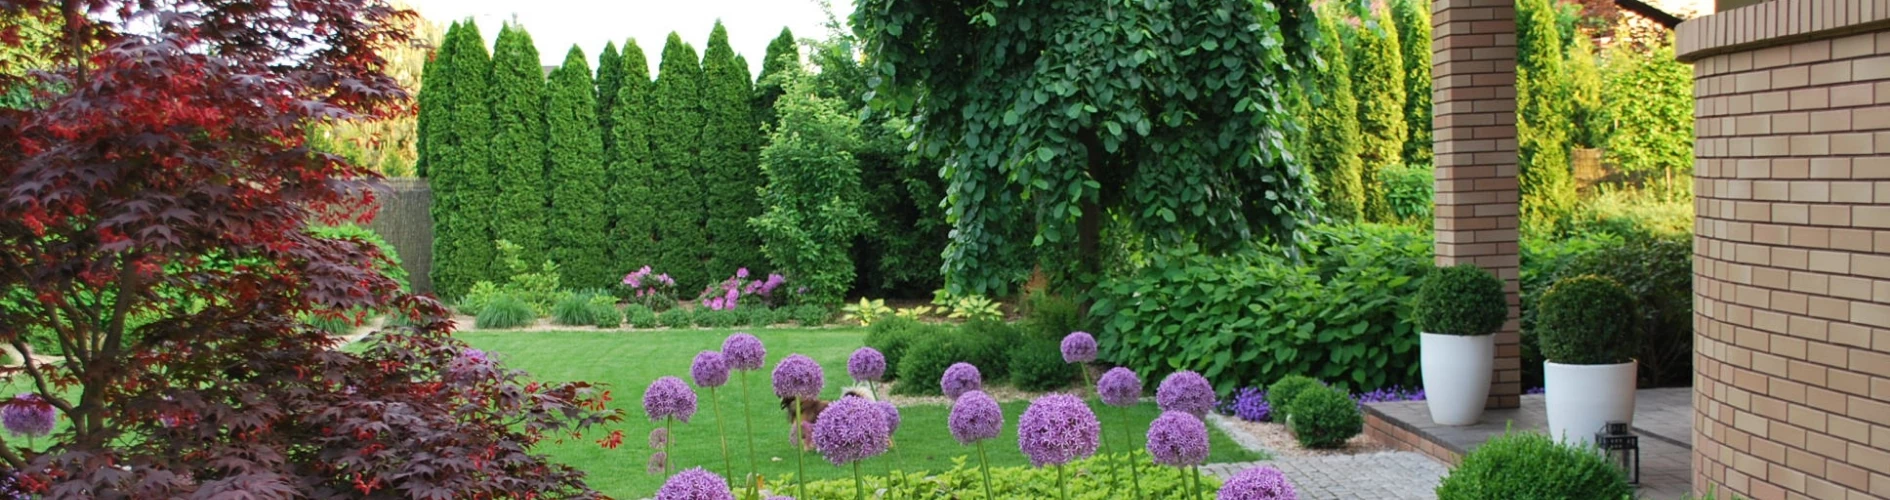 ogród z fioletowymi kwiatami